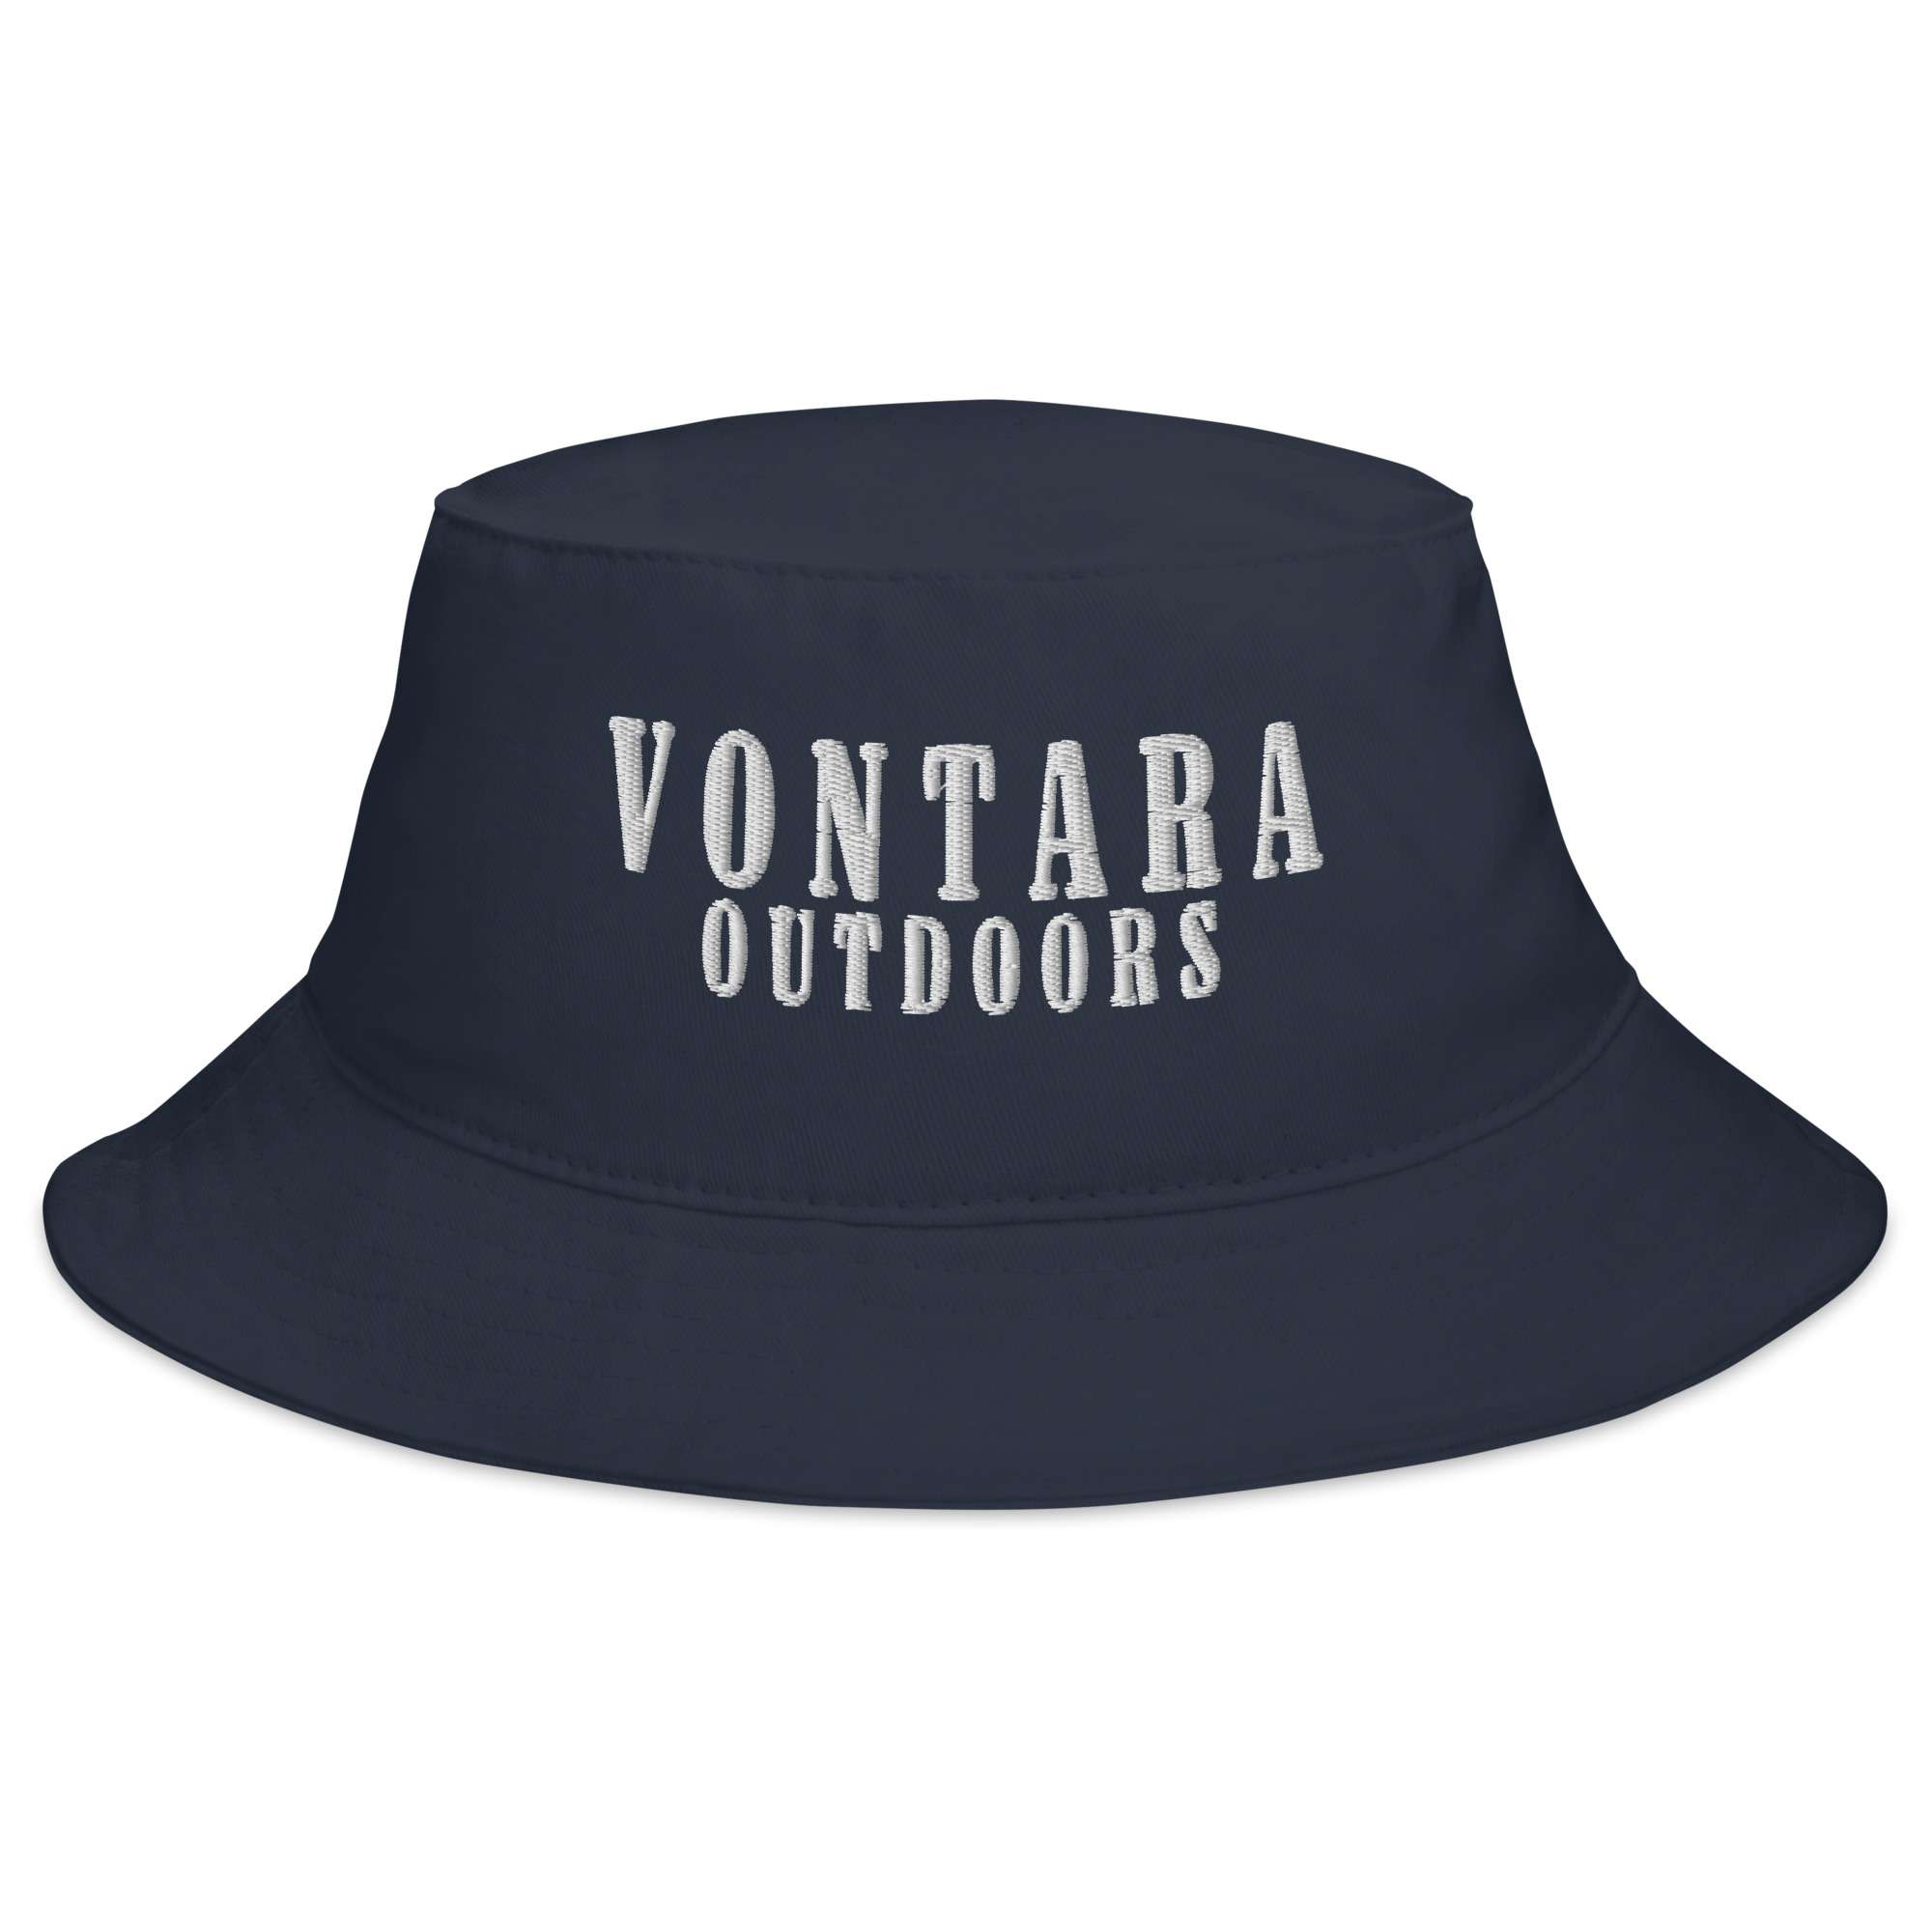 Vontara Outdoors Bucket Hat in Navy - VONTARA